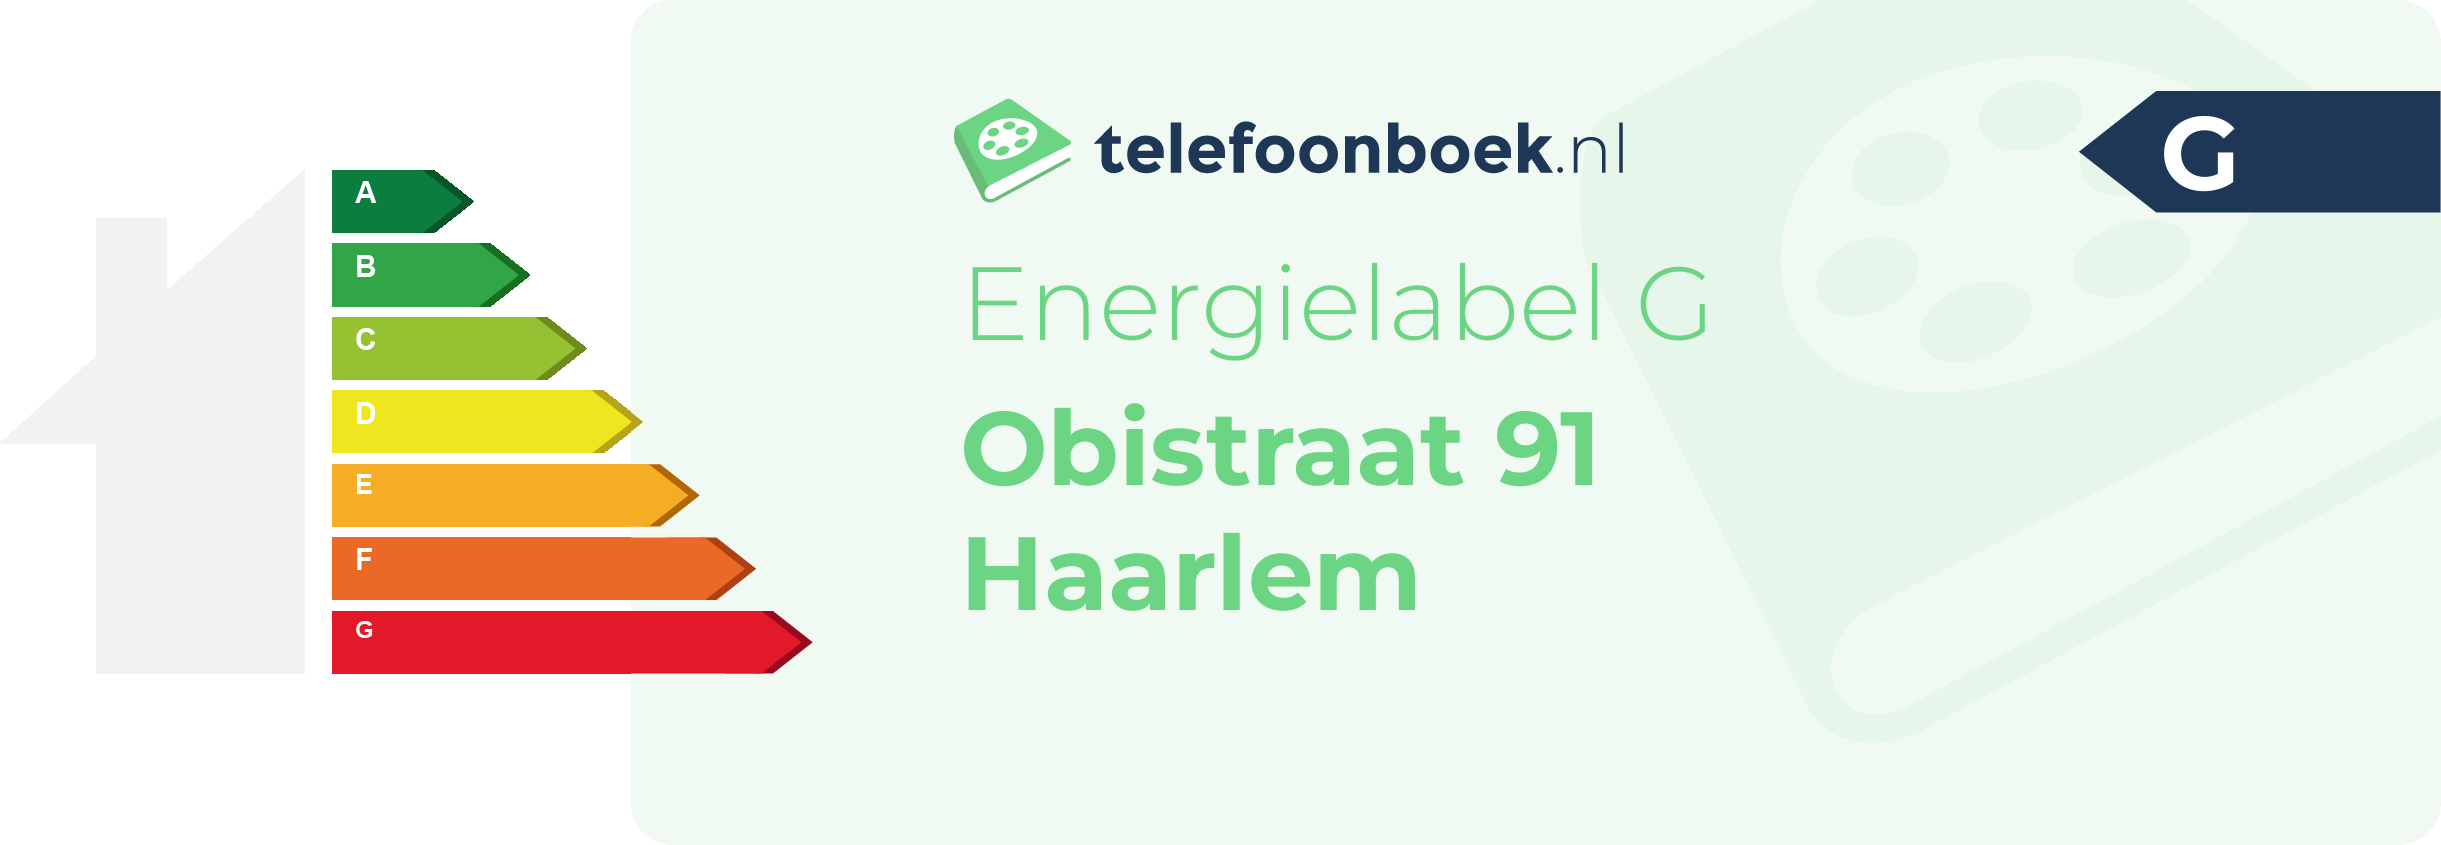 Energielabel Obistraat 91 Haarlem